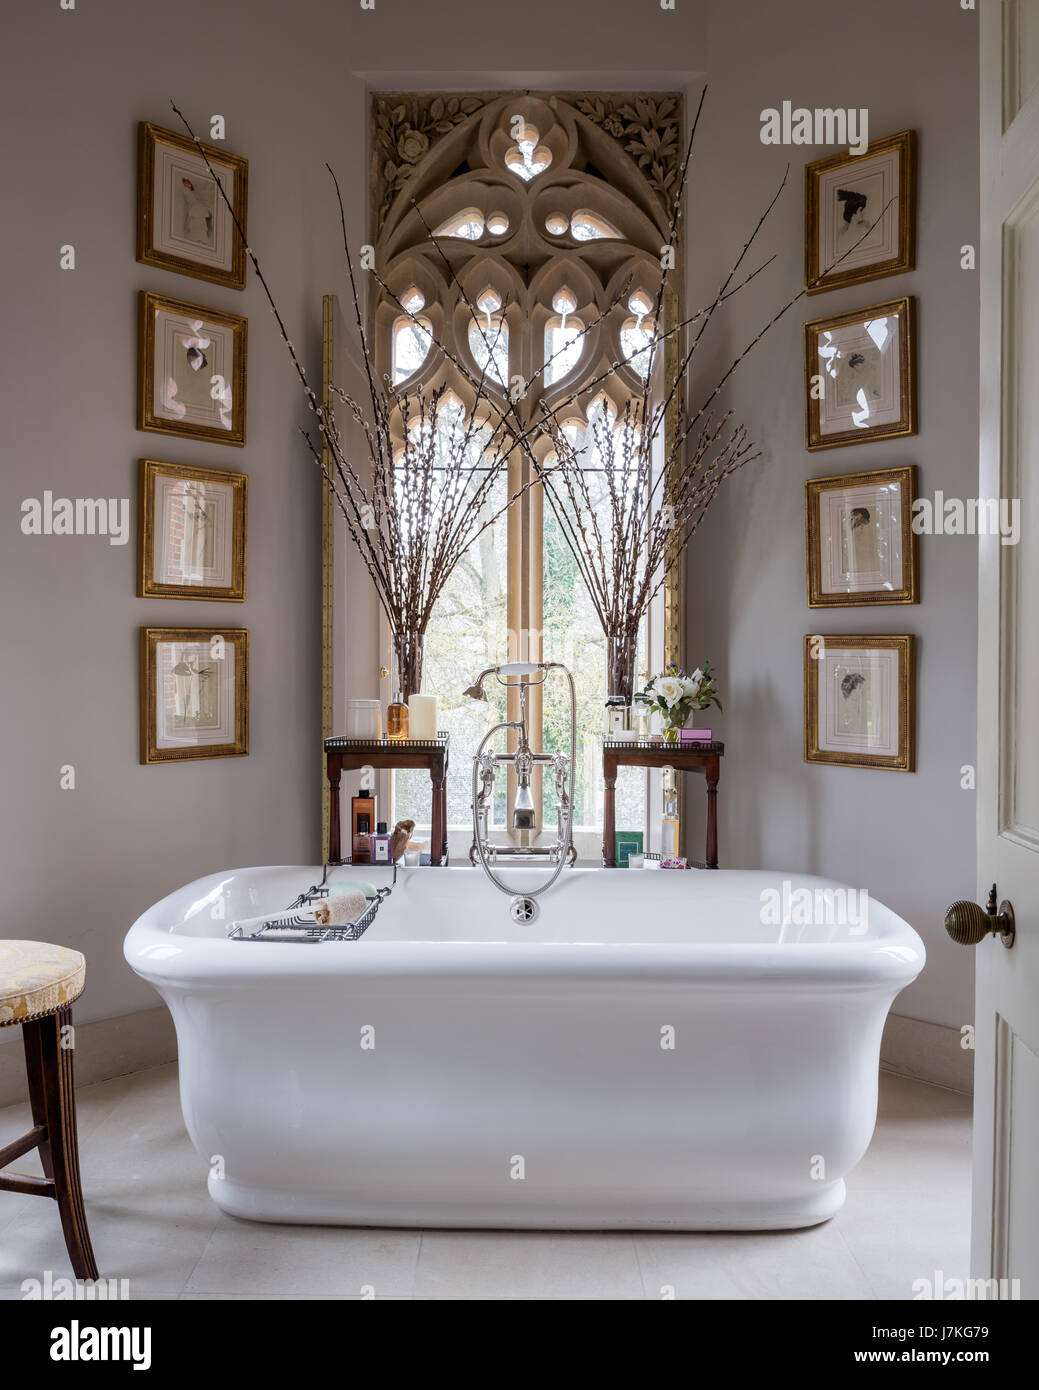 Stand alone da bagno Drummonds in bagno con drammatica finestra gotica e le pareti dipinte in cera Mirto da terra cotti Foto Stock